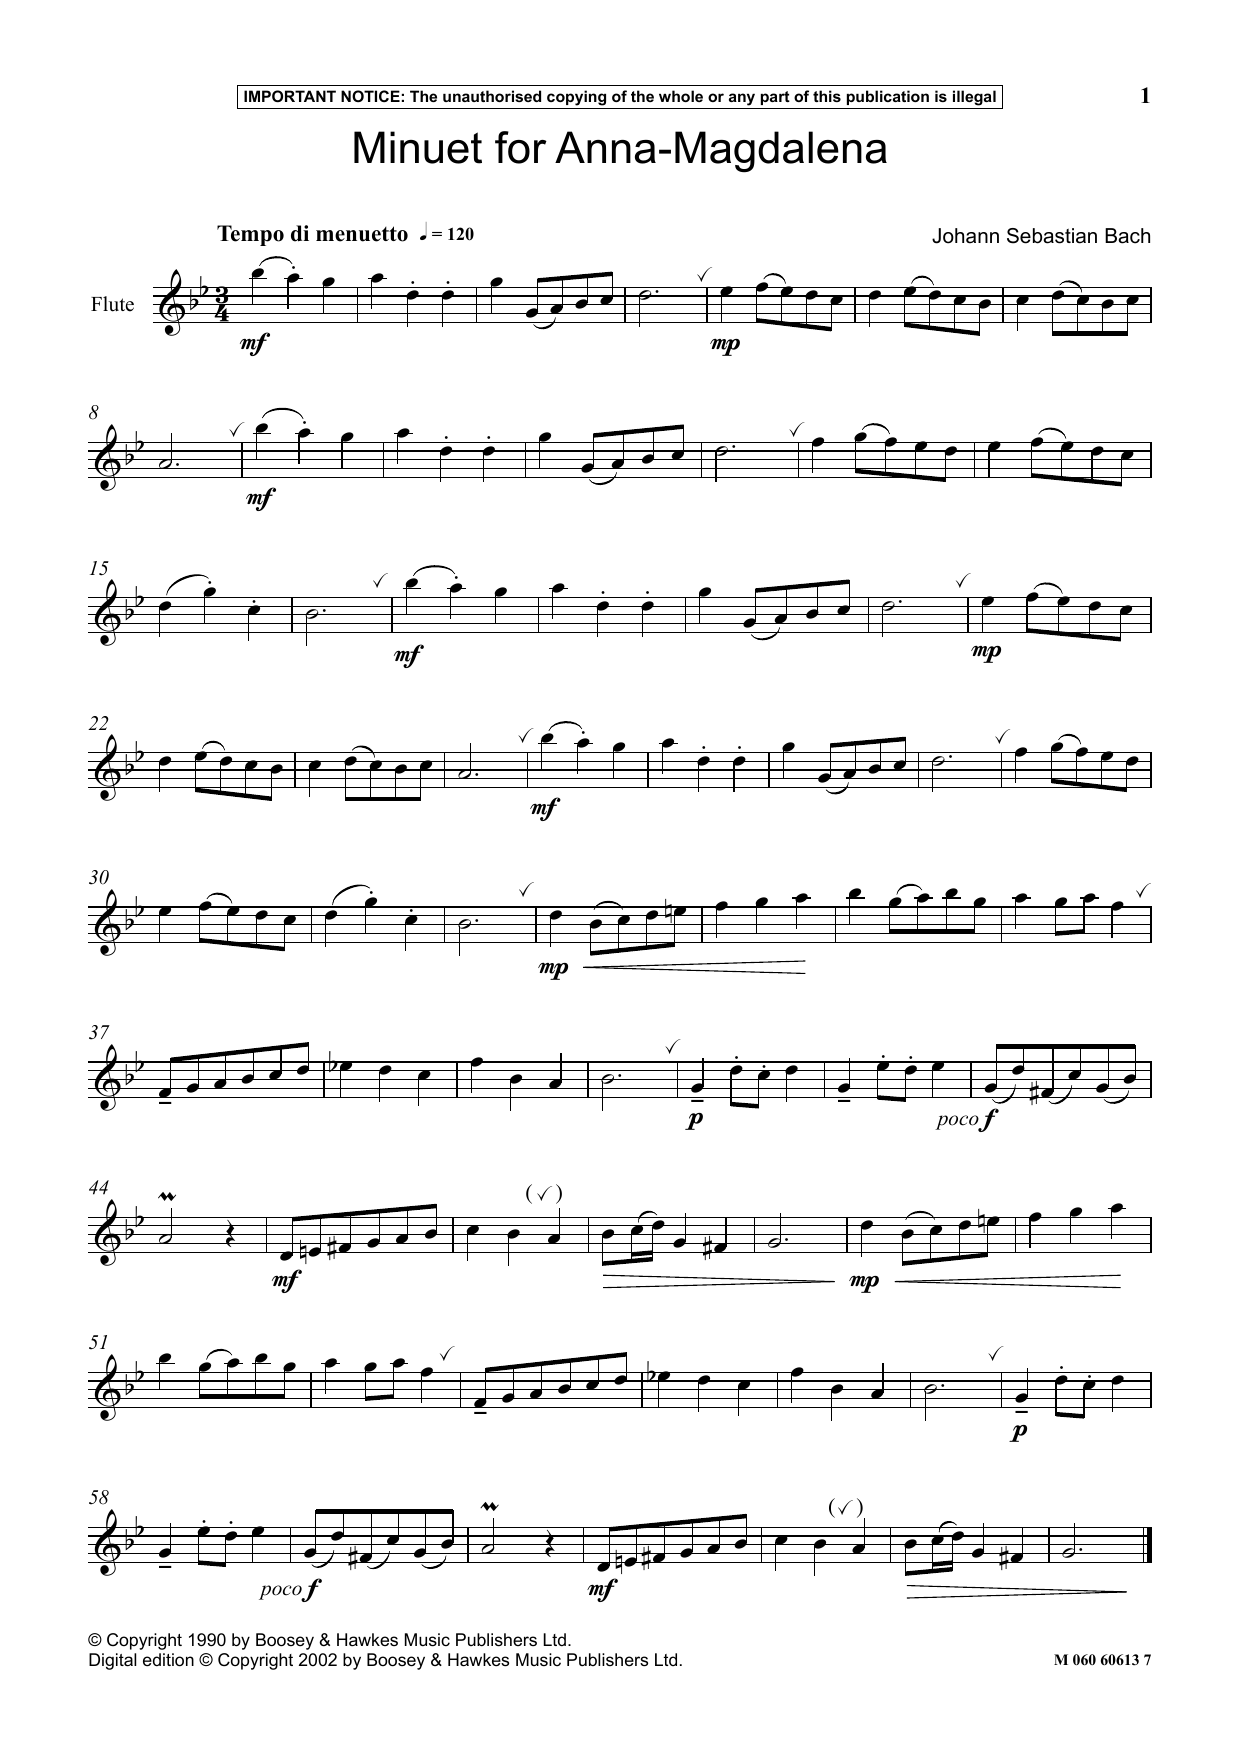 Download Johann Sebastian Bach Minuet For Anna Magdalena Sheet Music